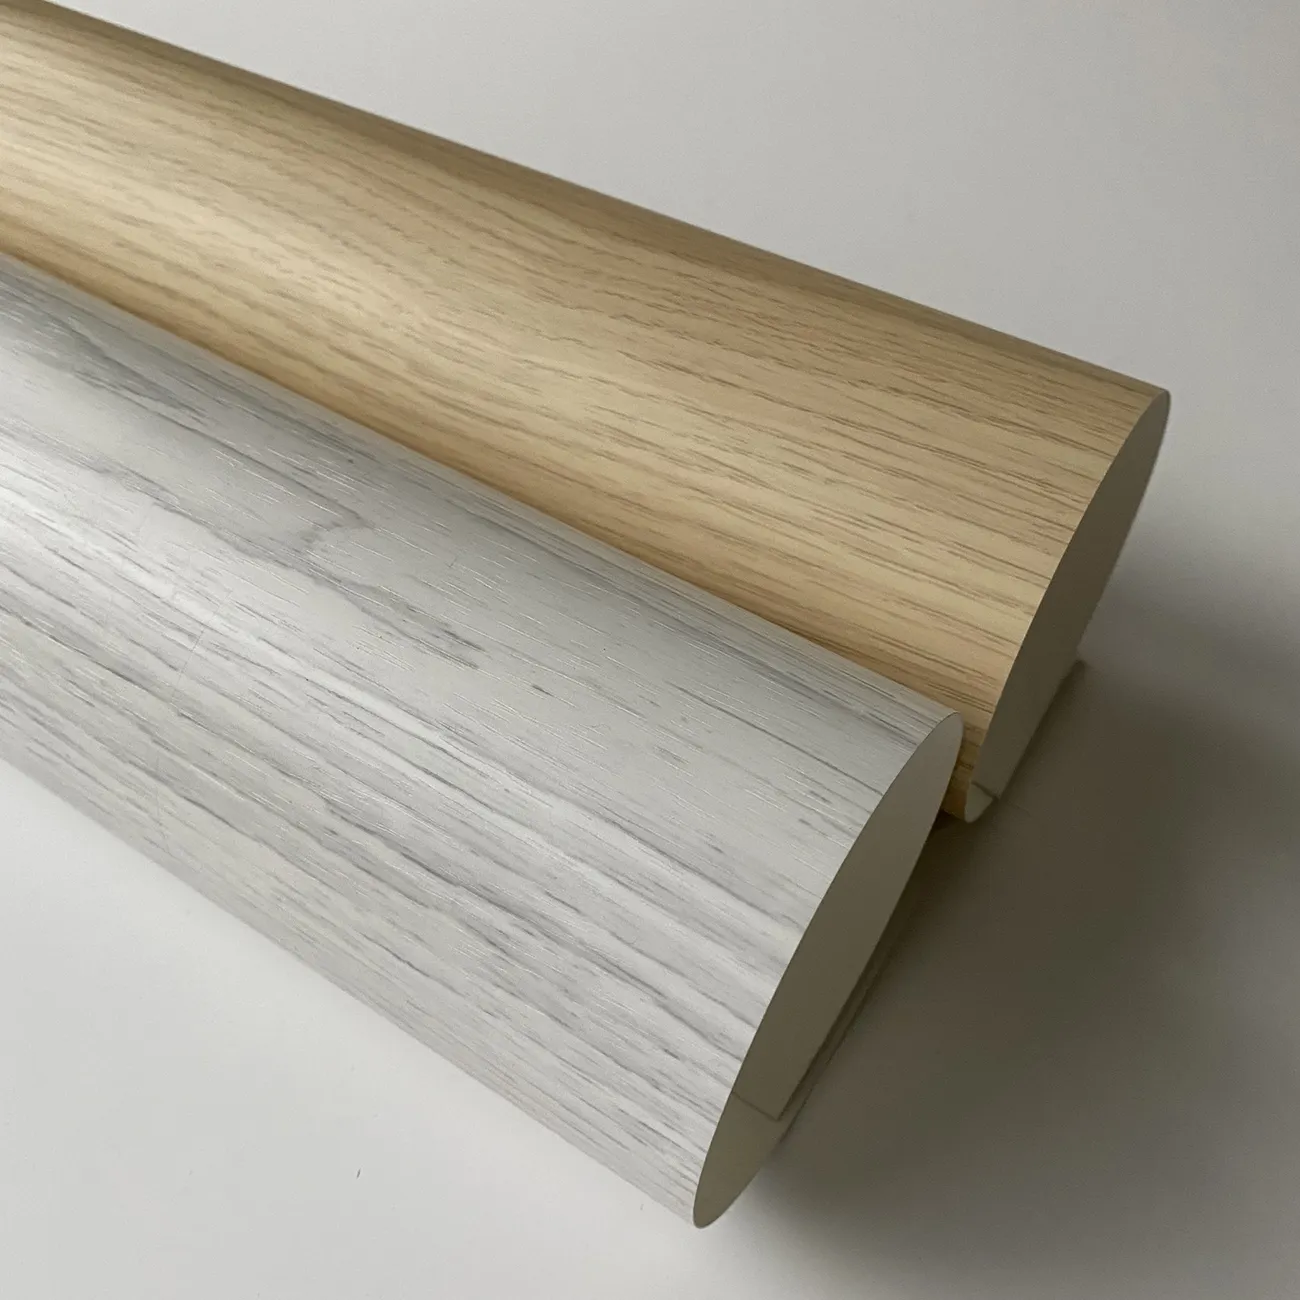 Фольга из ПВХ с деревянной текстурой для МДФ, вакуумный пресс, ширина 1400 мм, декоративная пленка из ПВХ/фольга/лист для двери